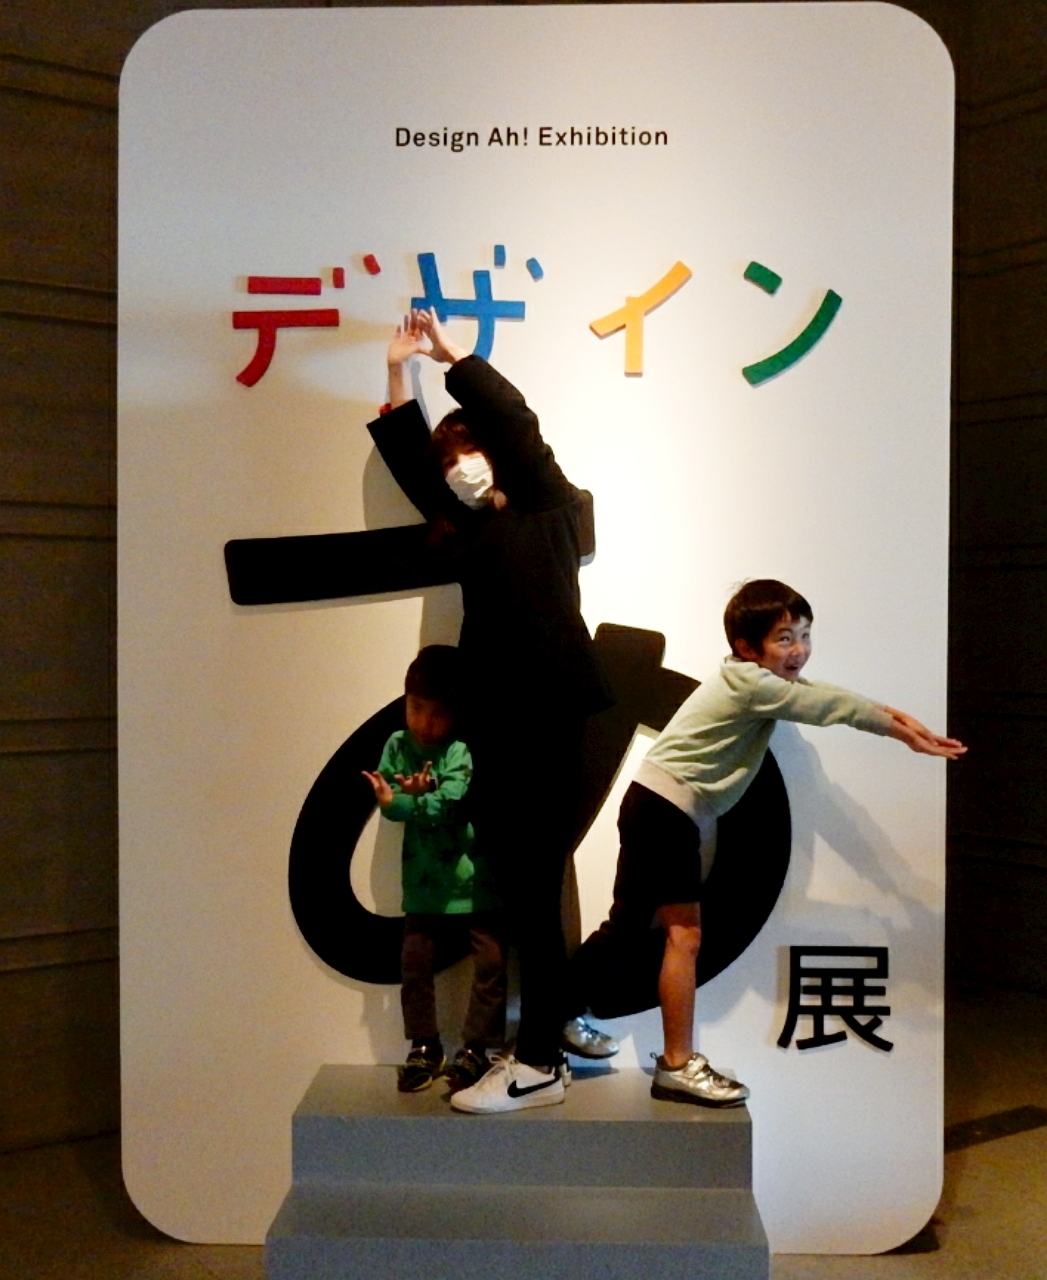 「デザインあ展 in SHIGA 」に行ってきました♪大人も小さな子どもも楽しめます！行く価値あり！〈佐川美術館 2月11日まで開催〉